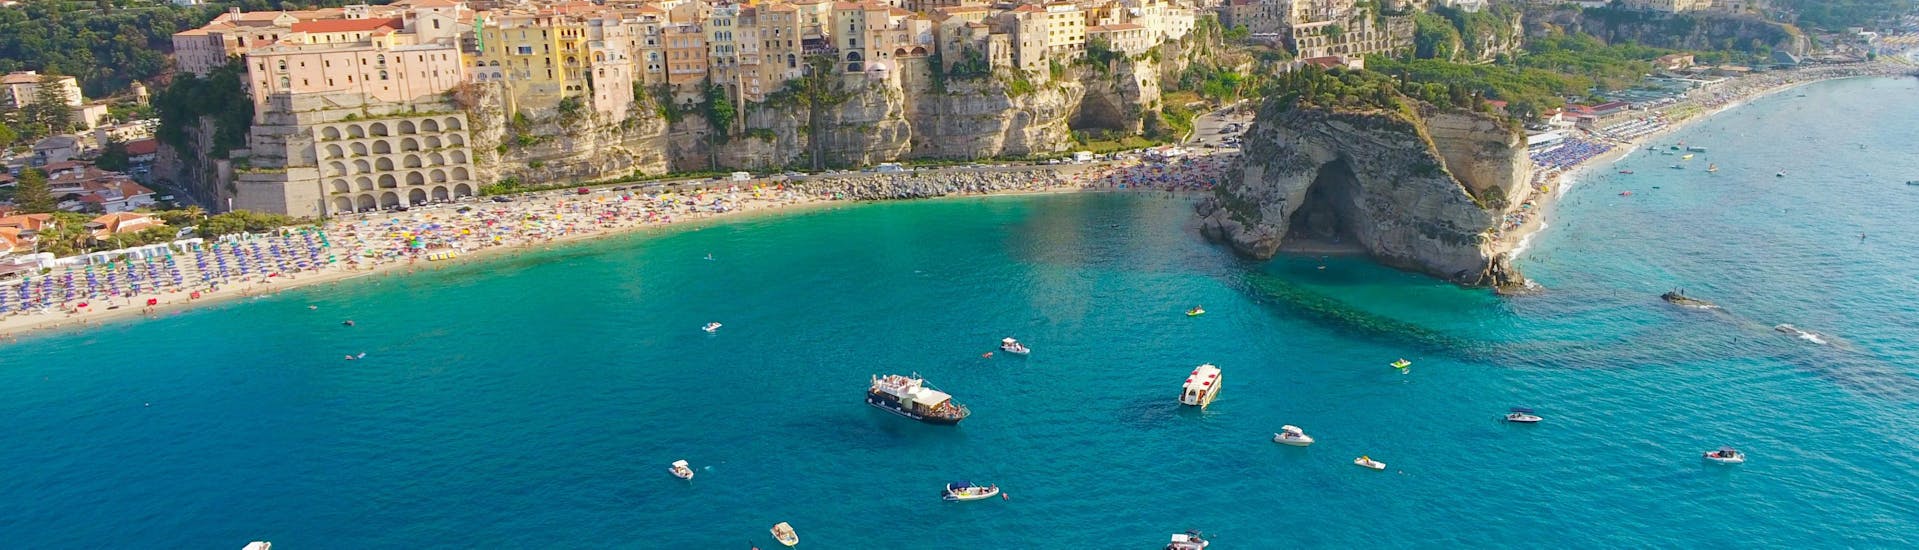 La encantadora ciudad de Tropea, desde donde comenzará el paseo en barco a Baia di Riaci y Capo Vaticano con Costa deglie Dei Tours Tropea.